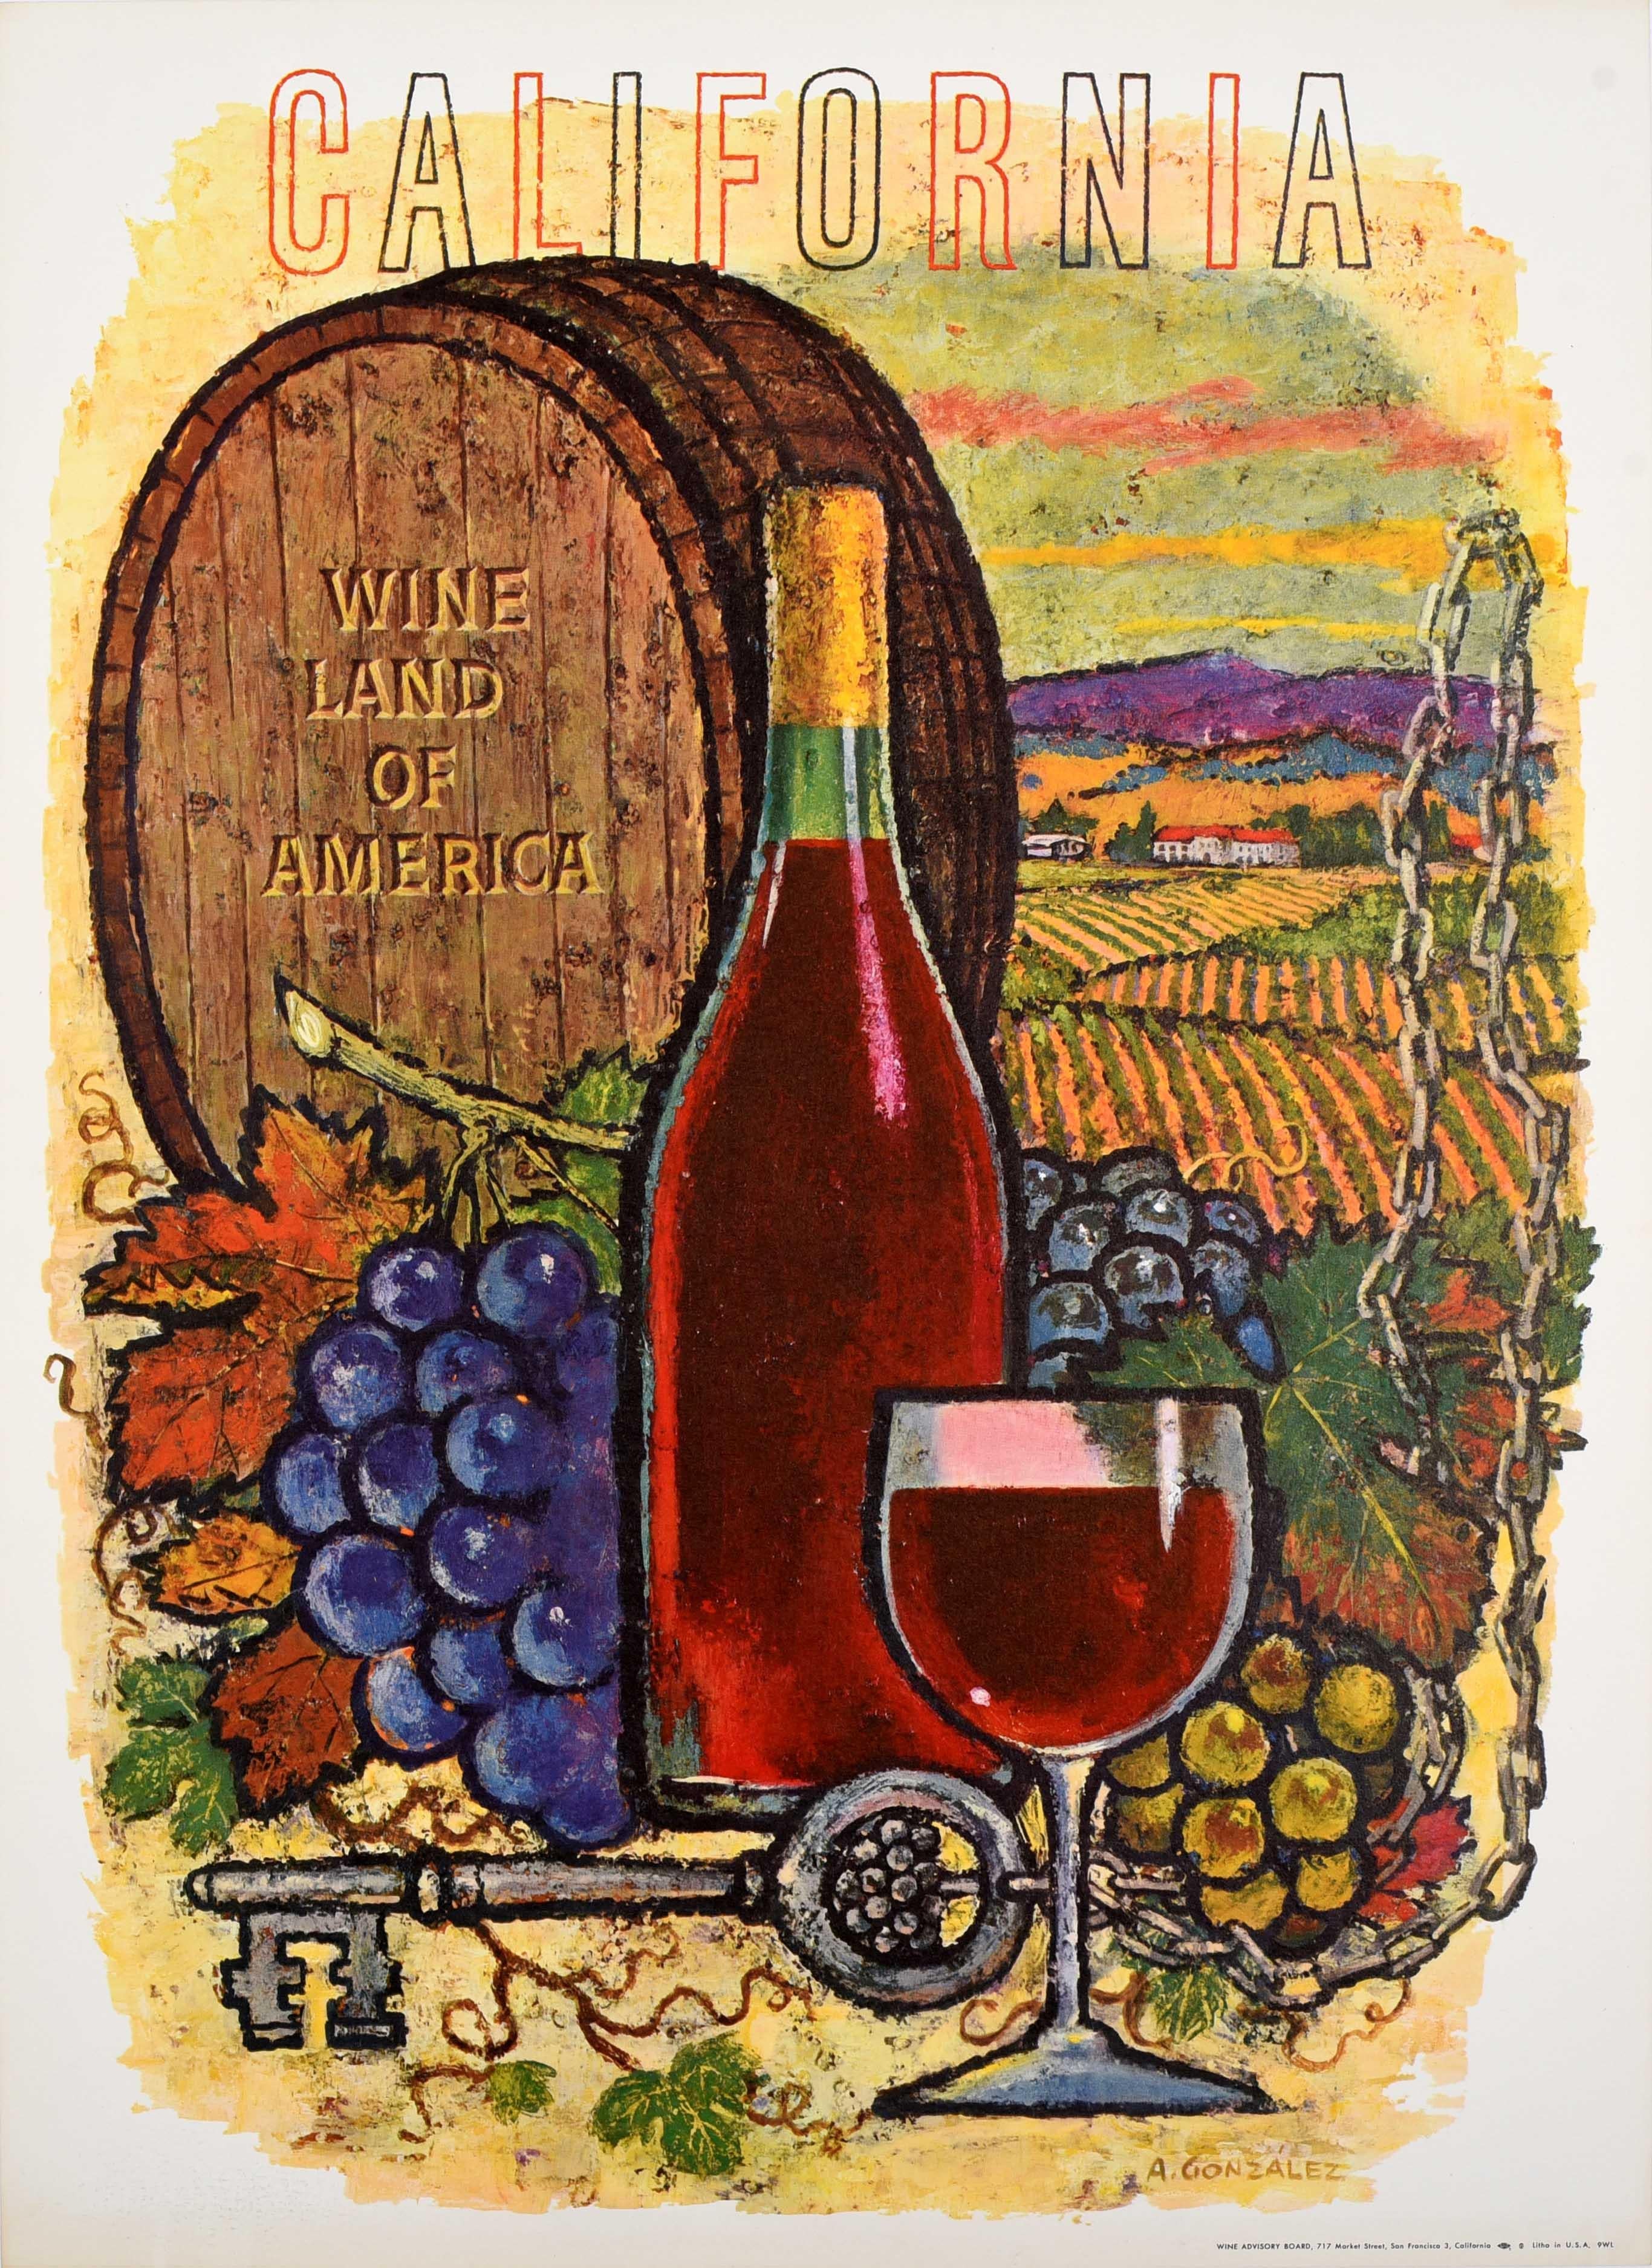 Unknown Print – Original-Vintage-Werbeplakat für Getränke, Kalifornien, Weinland Amerika